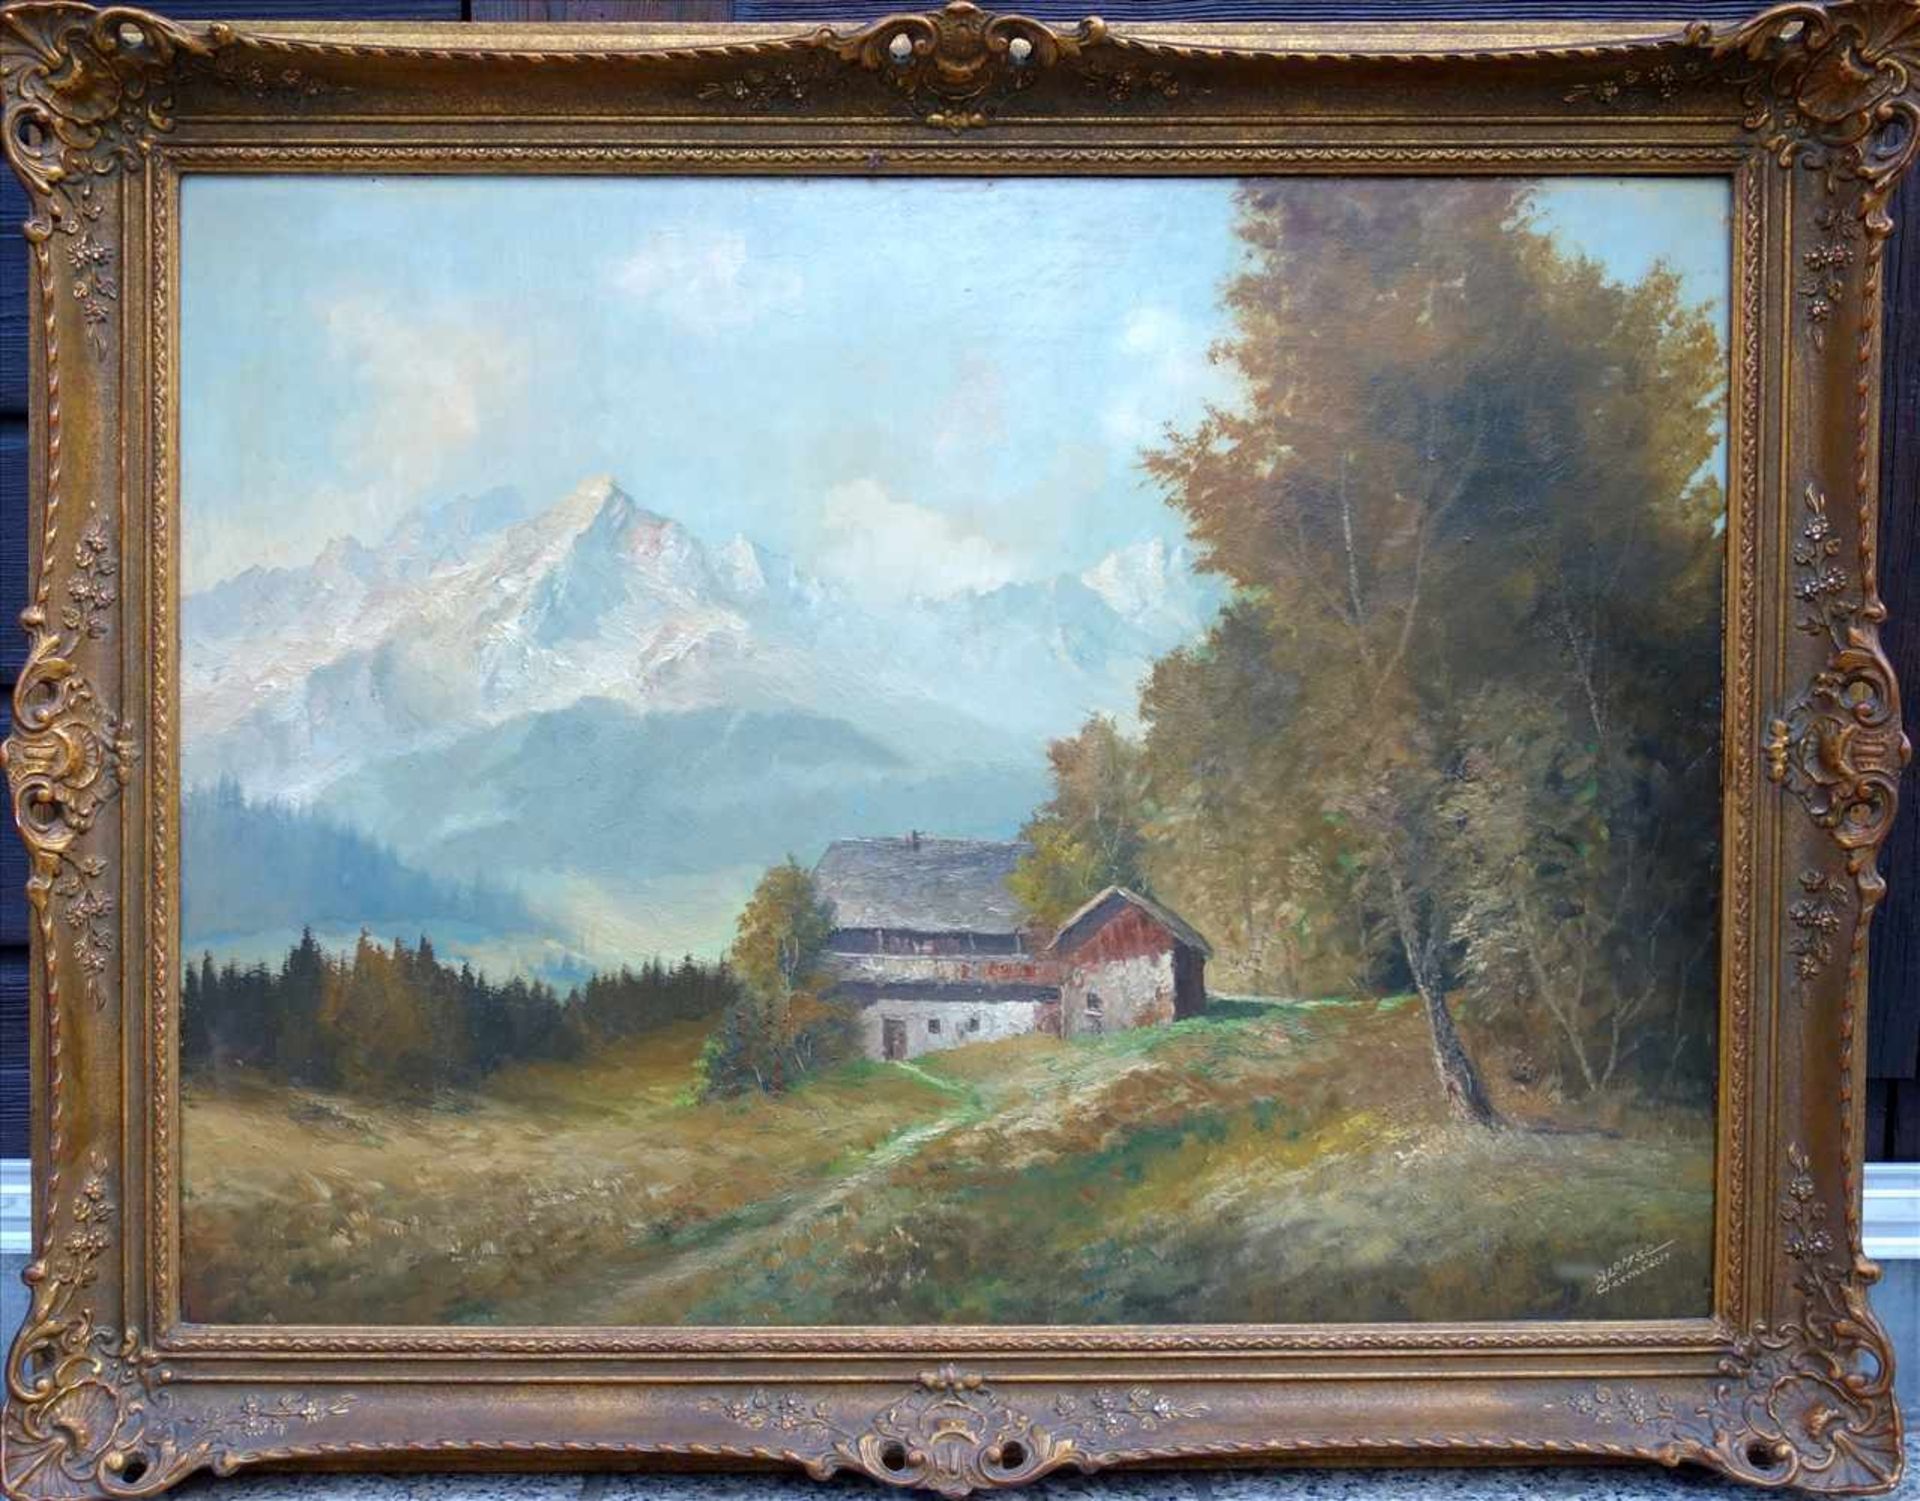 Richard Walter Lohse (20. Jh.) "Berghof im bayrischen Hochland", Öl/Hartf., unten rechts signiert